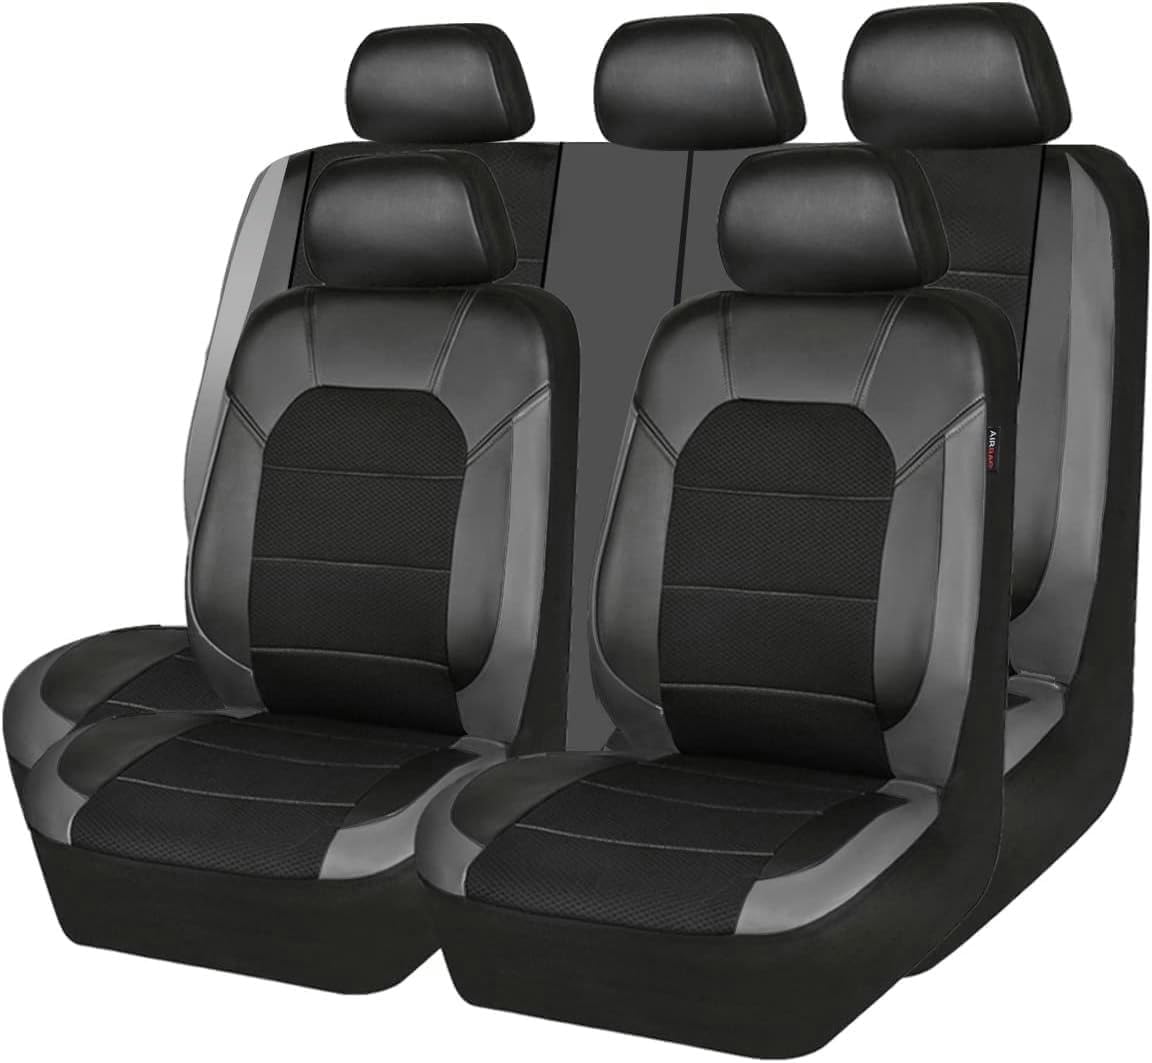 JOSKAA Autositzbezüge Universal passend für Mercede Benz W203 W204 W205 W211 W212 W213 W124 GLK GLC W164 W166 GLE Sitzbezug-Sets von JOSKAA